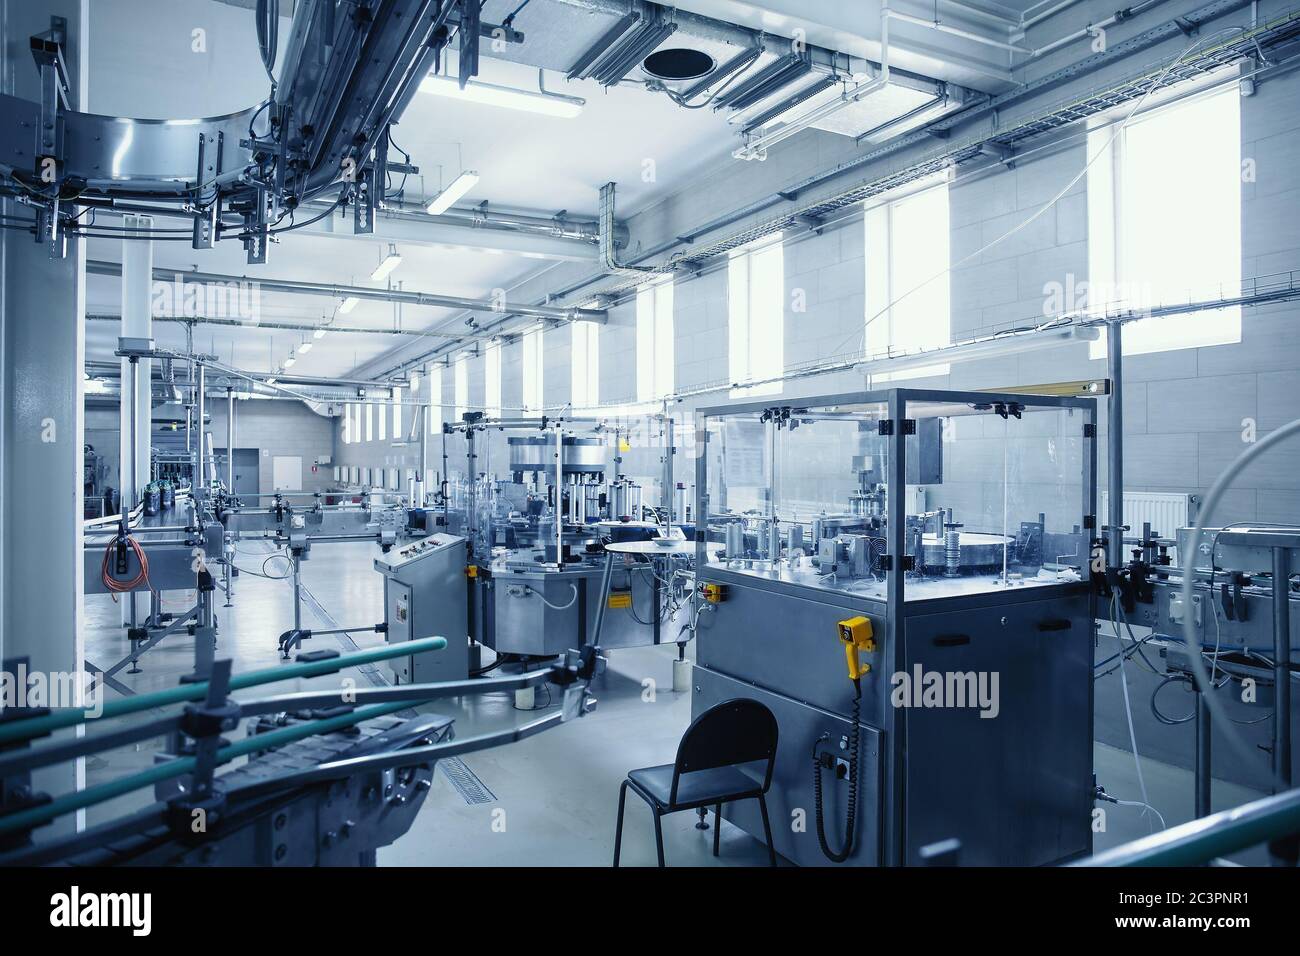 Industrielle Innenausstattung der Getränkefabrik, blau getönte. Herstellung von Lebensmitteln und Getränken. Stockfoto